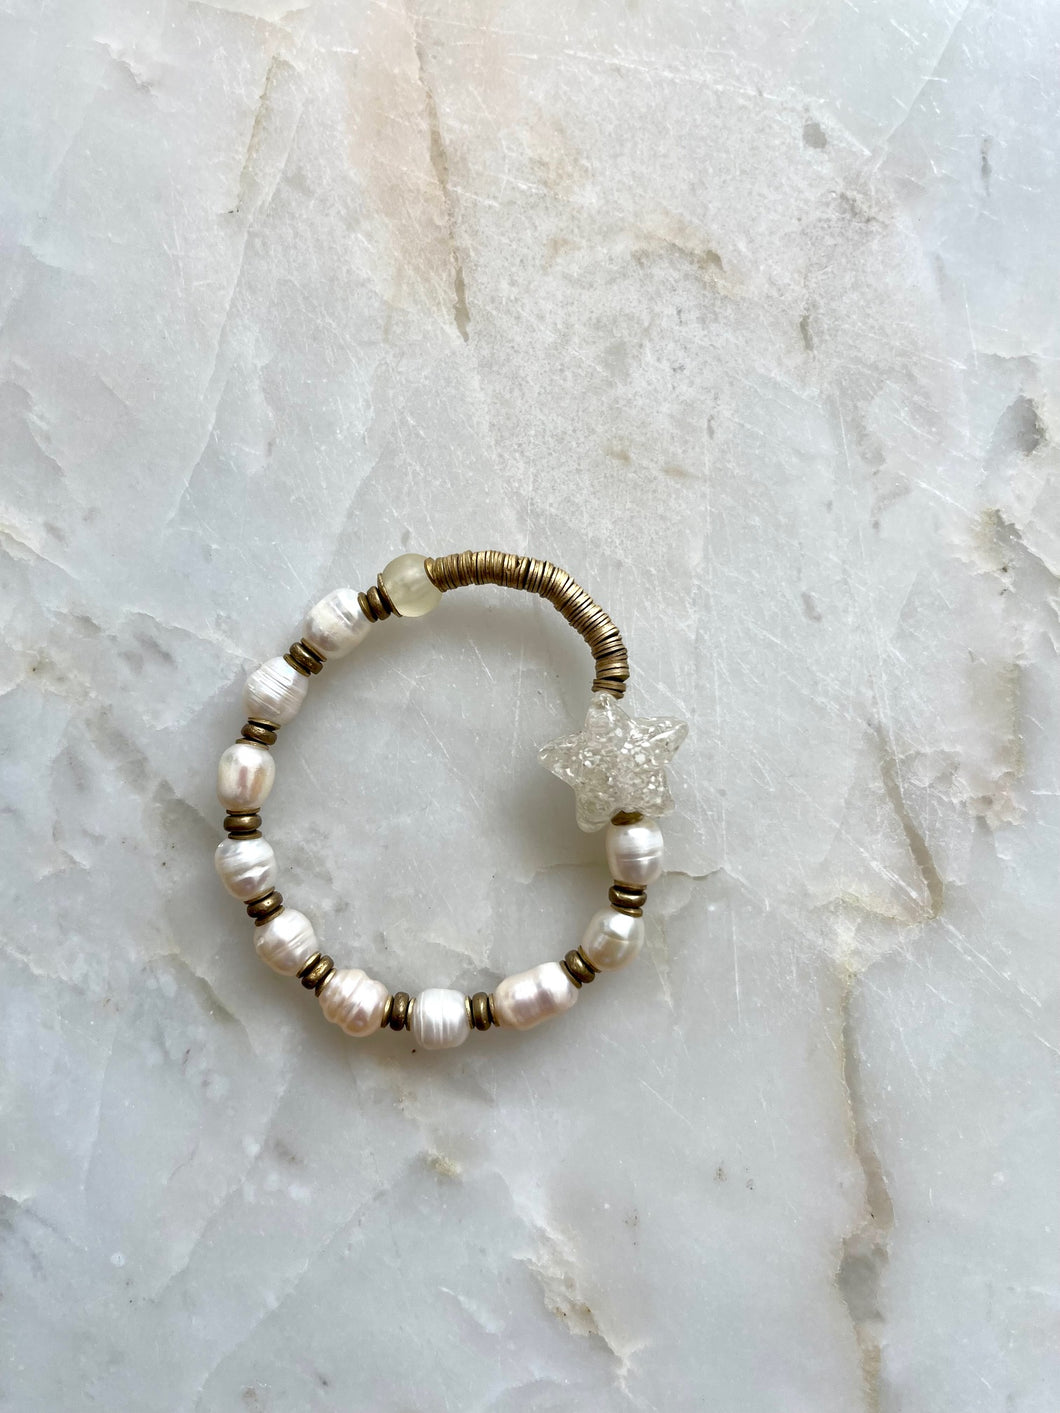 The Pearl Stardust bracelet